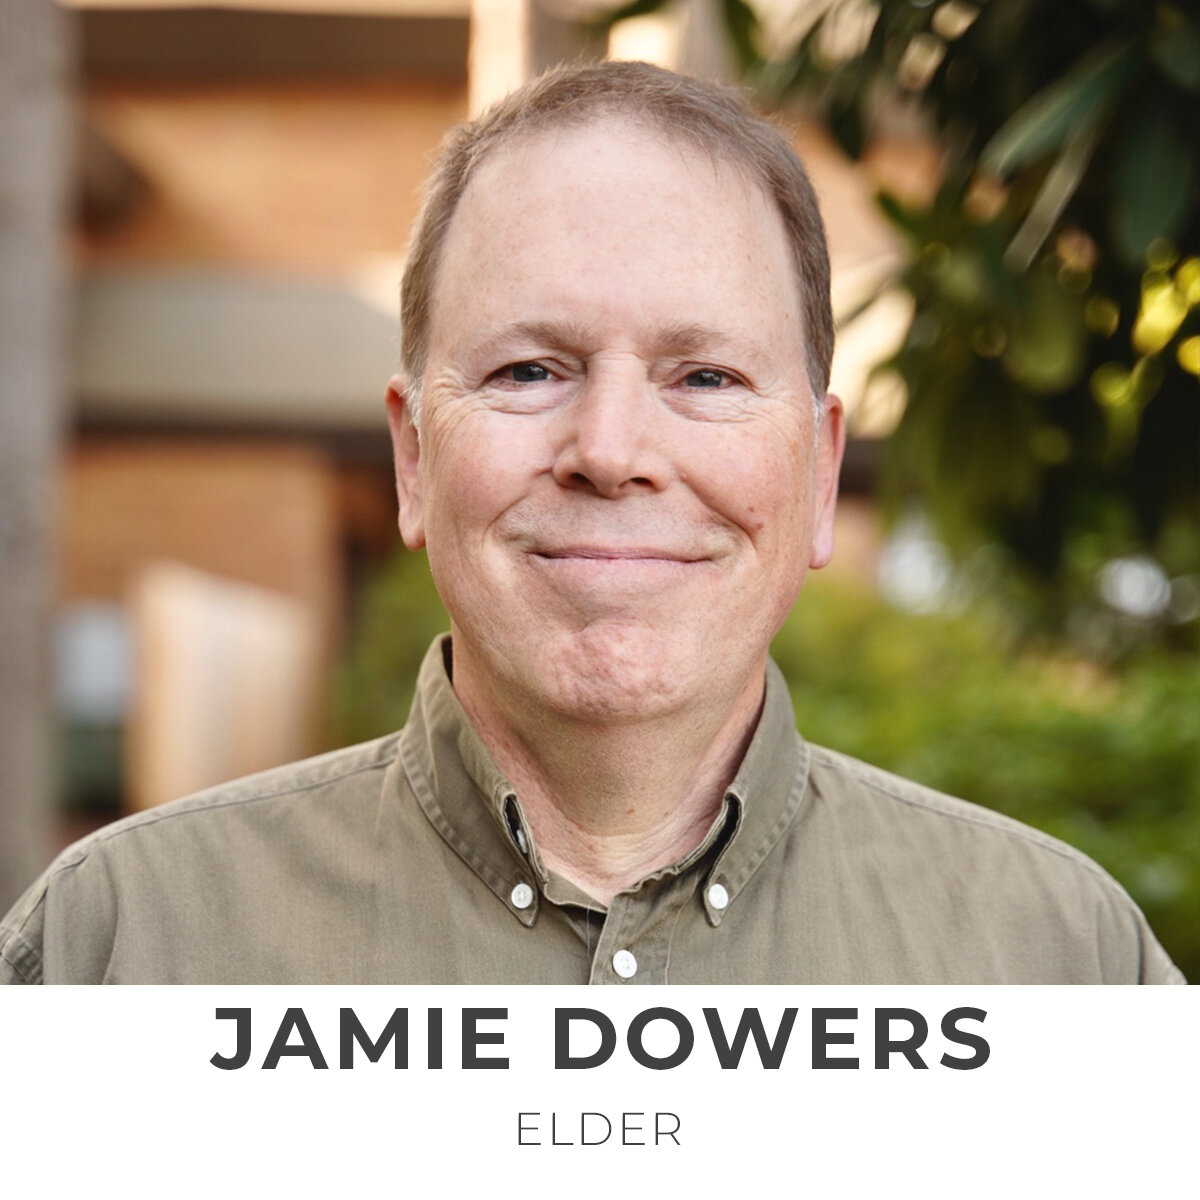 Jamie Dowers, Elder